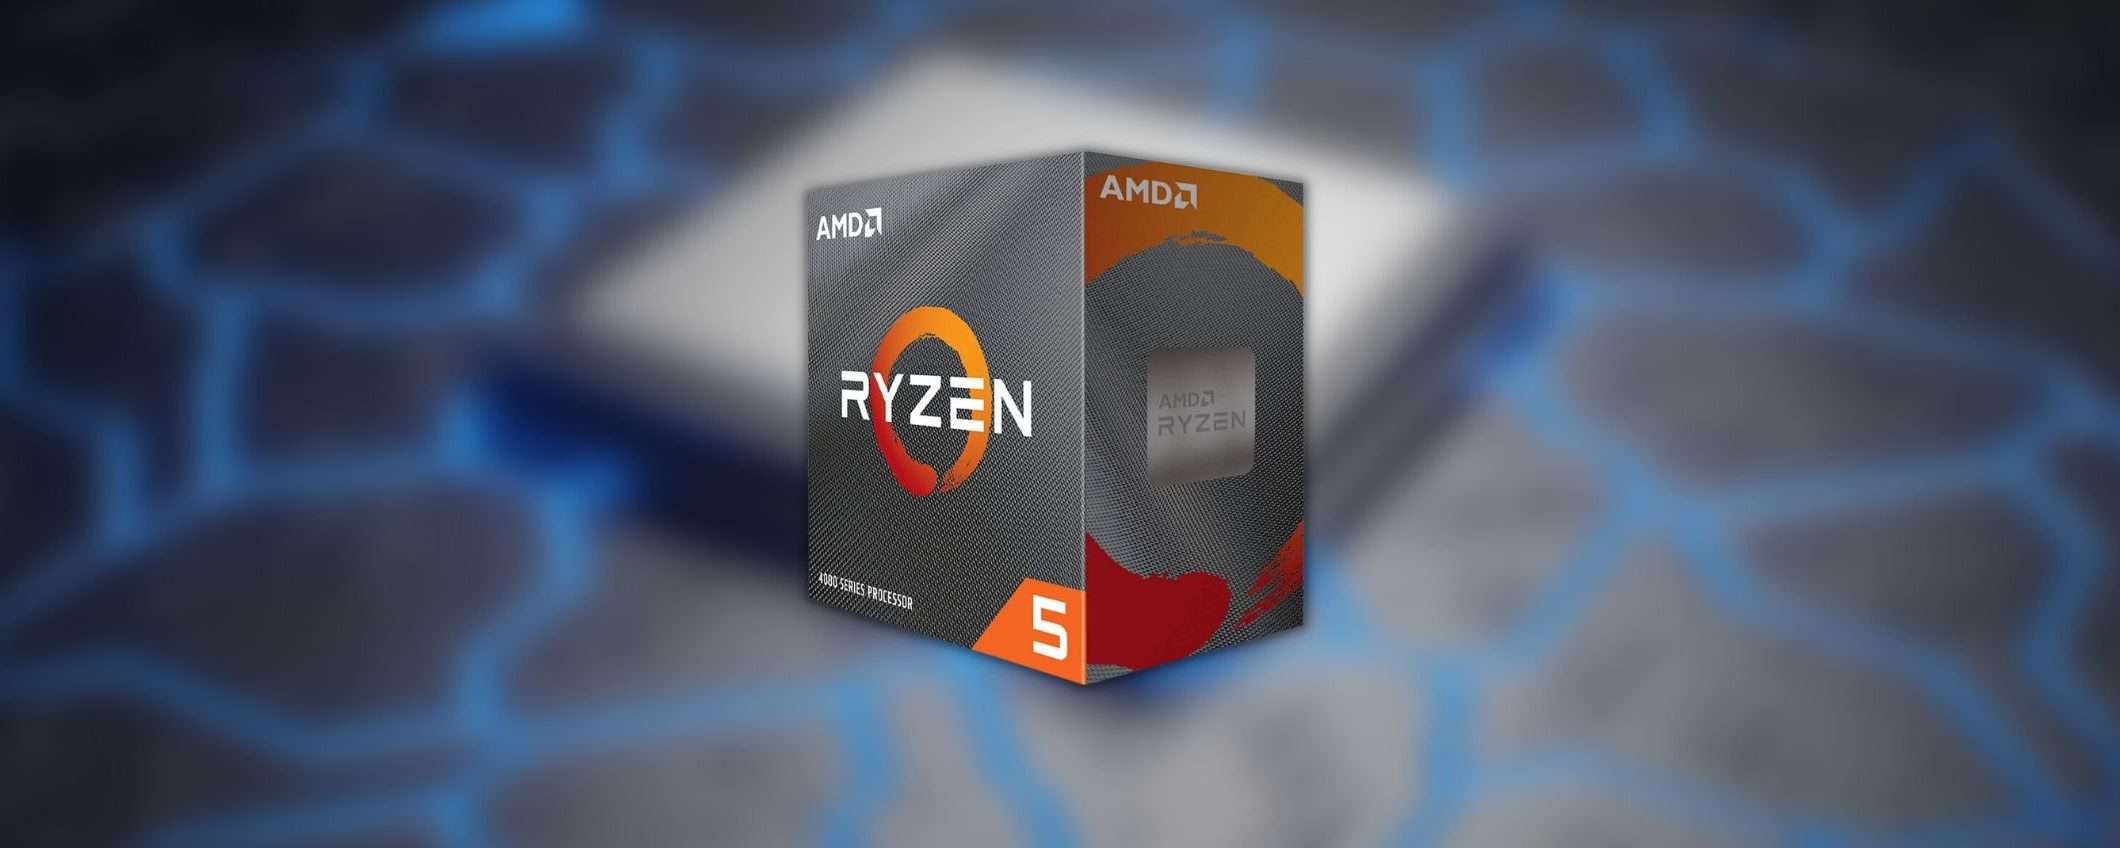 Processore AMD Ryzen 5: offertona Amazon, risparmi subito 82 euro